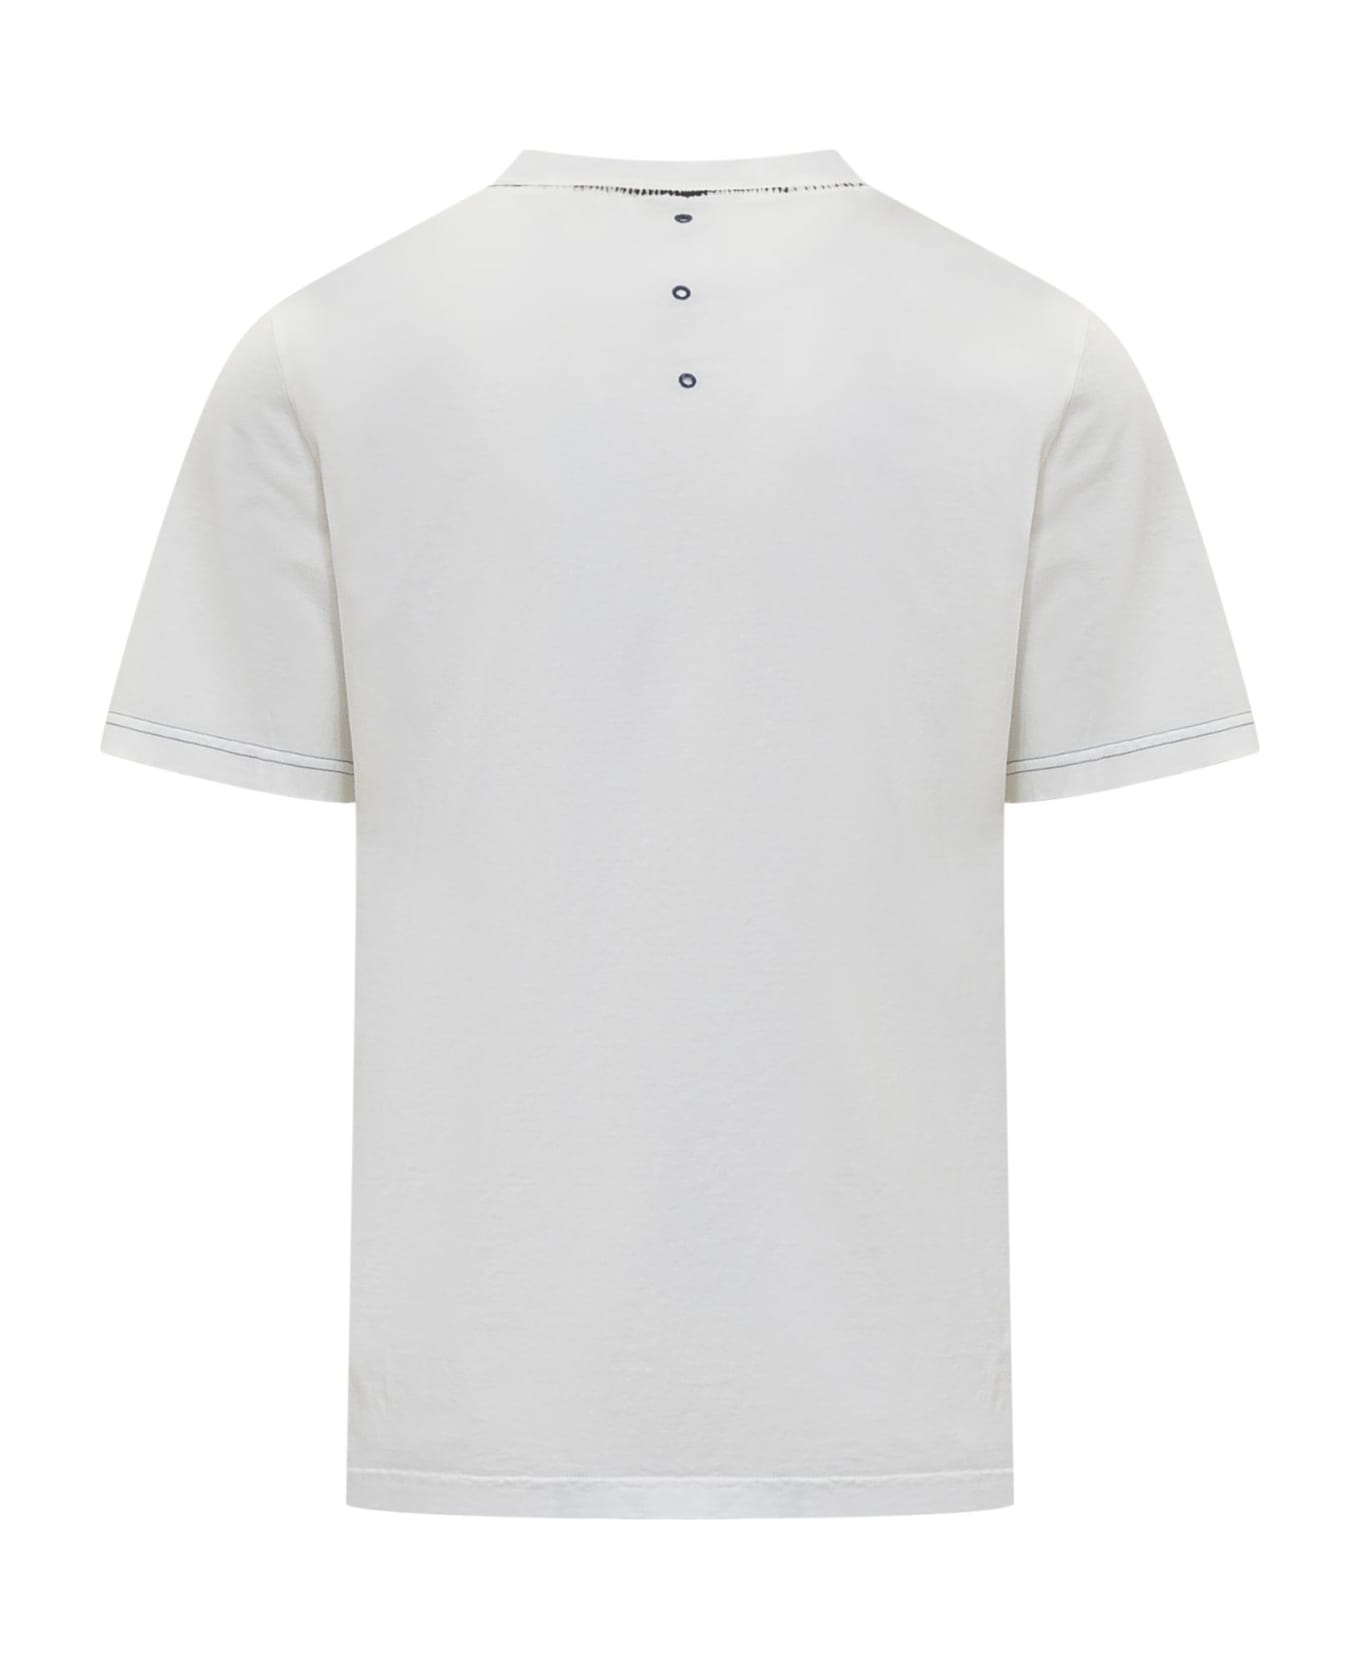 Premiata T-shirt With Print - WHITE